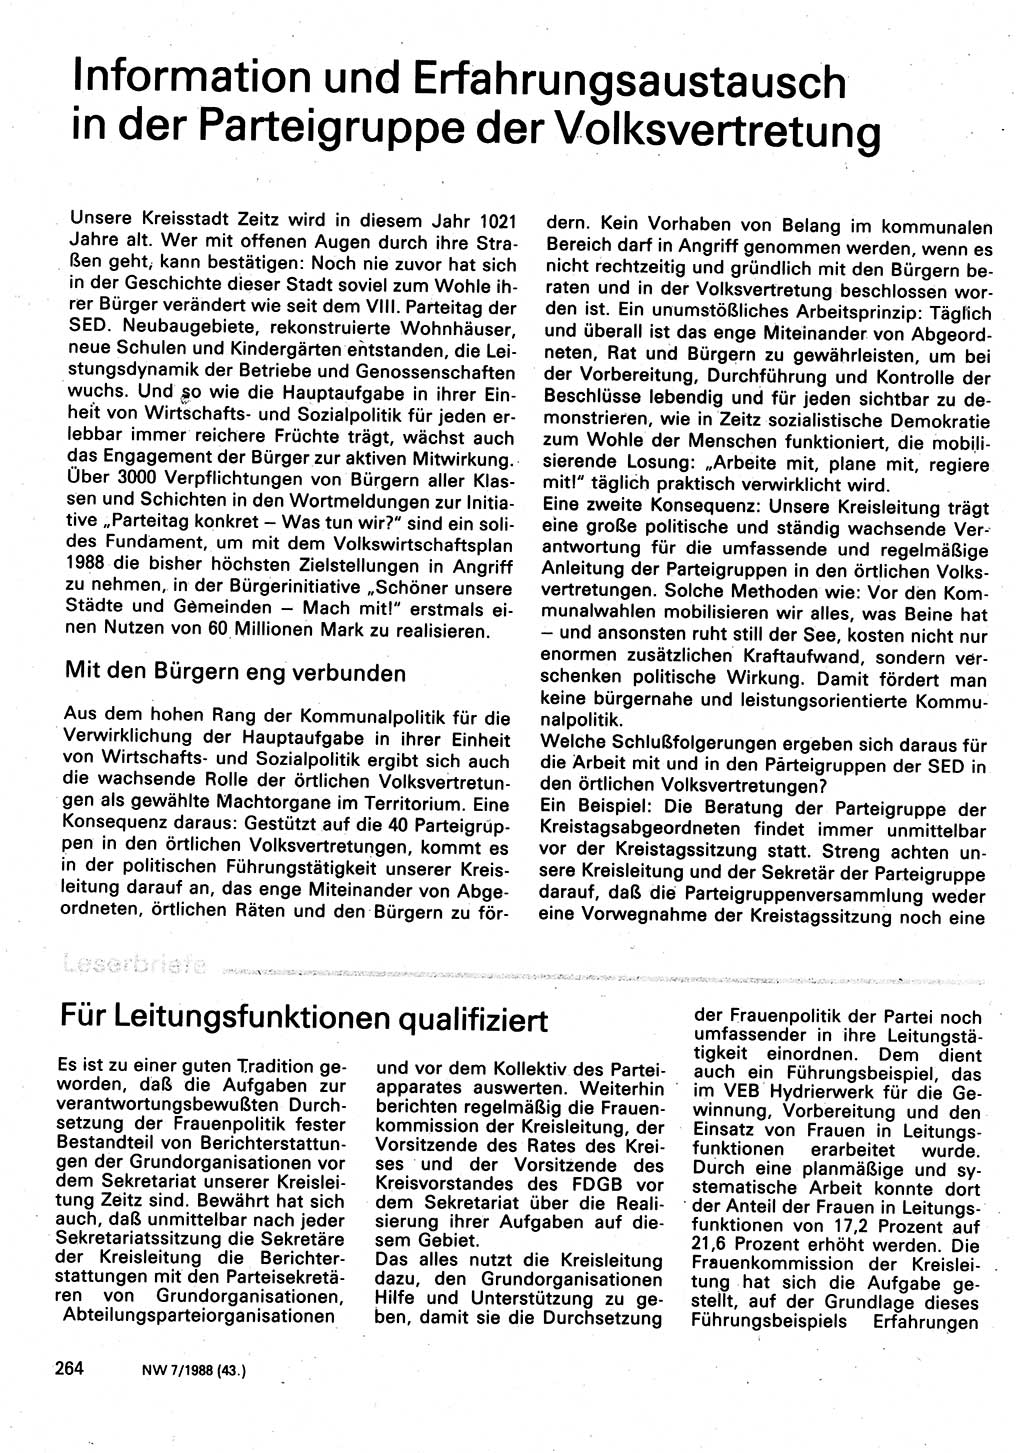 Neuer Weg (NW), Organ des Zentralkomitees (ZK) der SED (Sozialistische Einheitspartei Deutschlands) für Fragen des Parteilebens, 43. Jahrgang [Deutsche Demokratische Republik (DDR)] 1988, Seite 264 (NW ZK SED DDR 1988, S. 264)